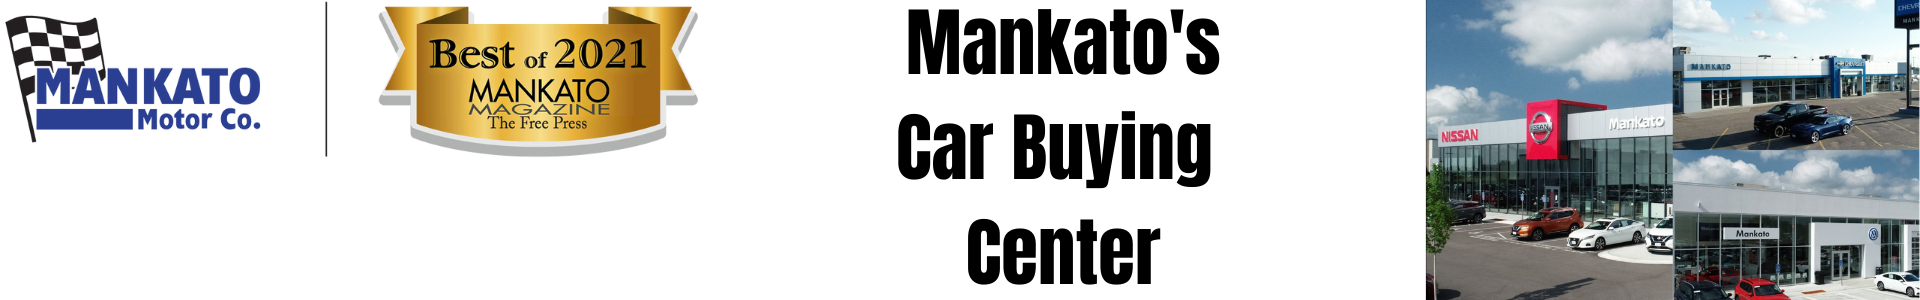 Mankato Motors Car Buying Center